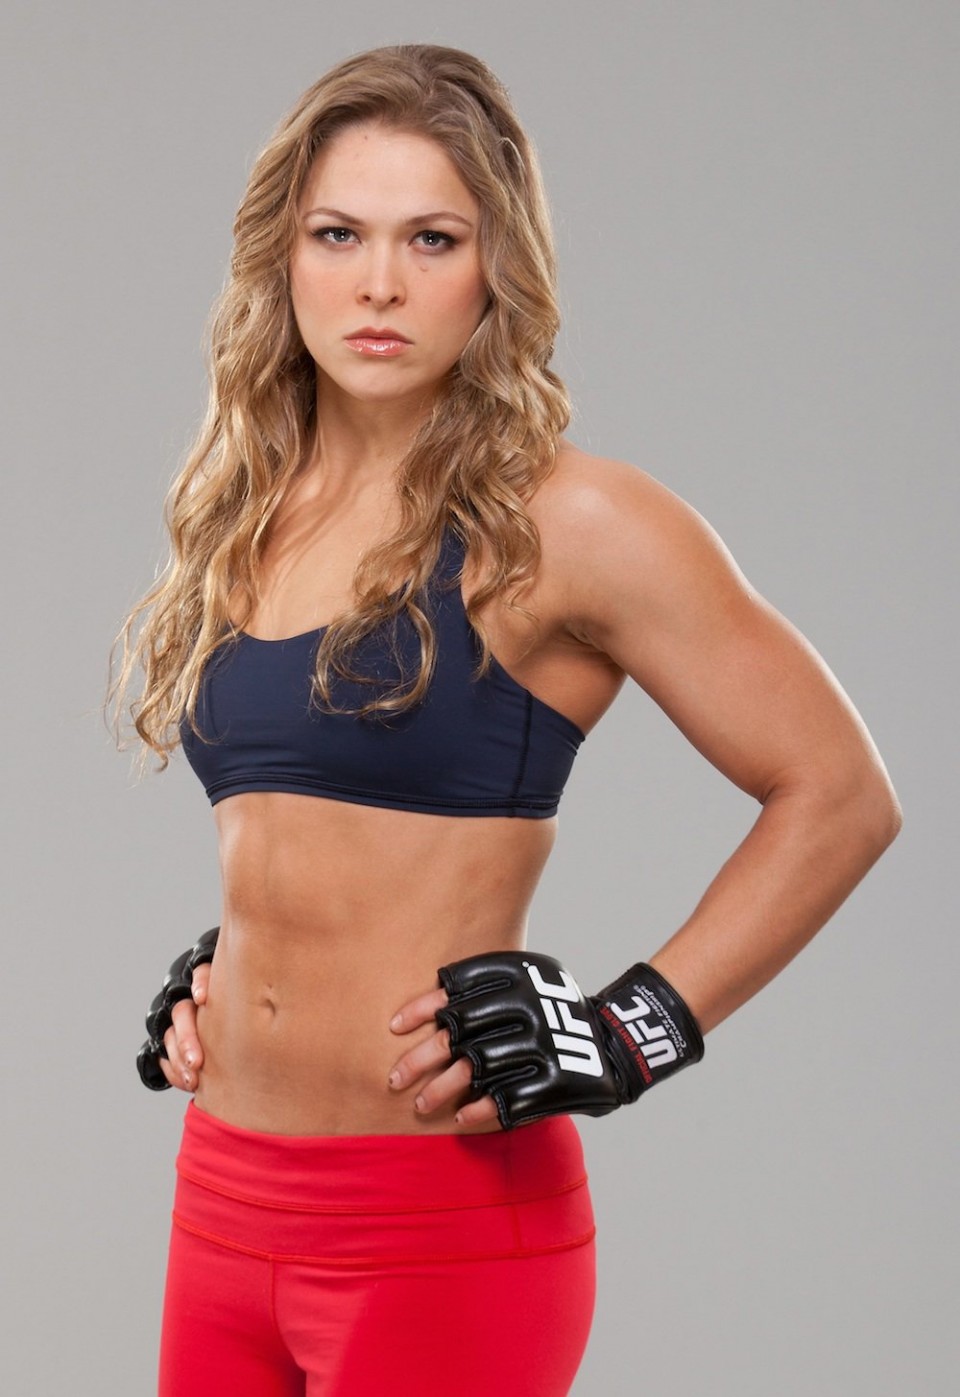 Ronda Rousey lutadora do UFC em fotos sensuais bem gostosa - Foto 6519